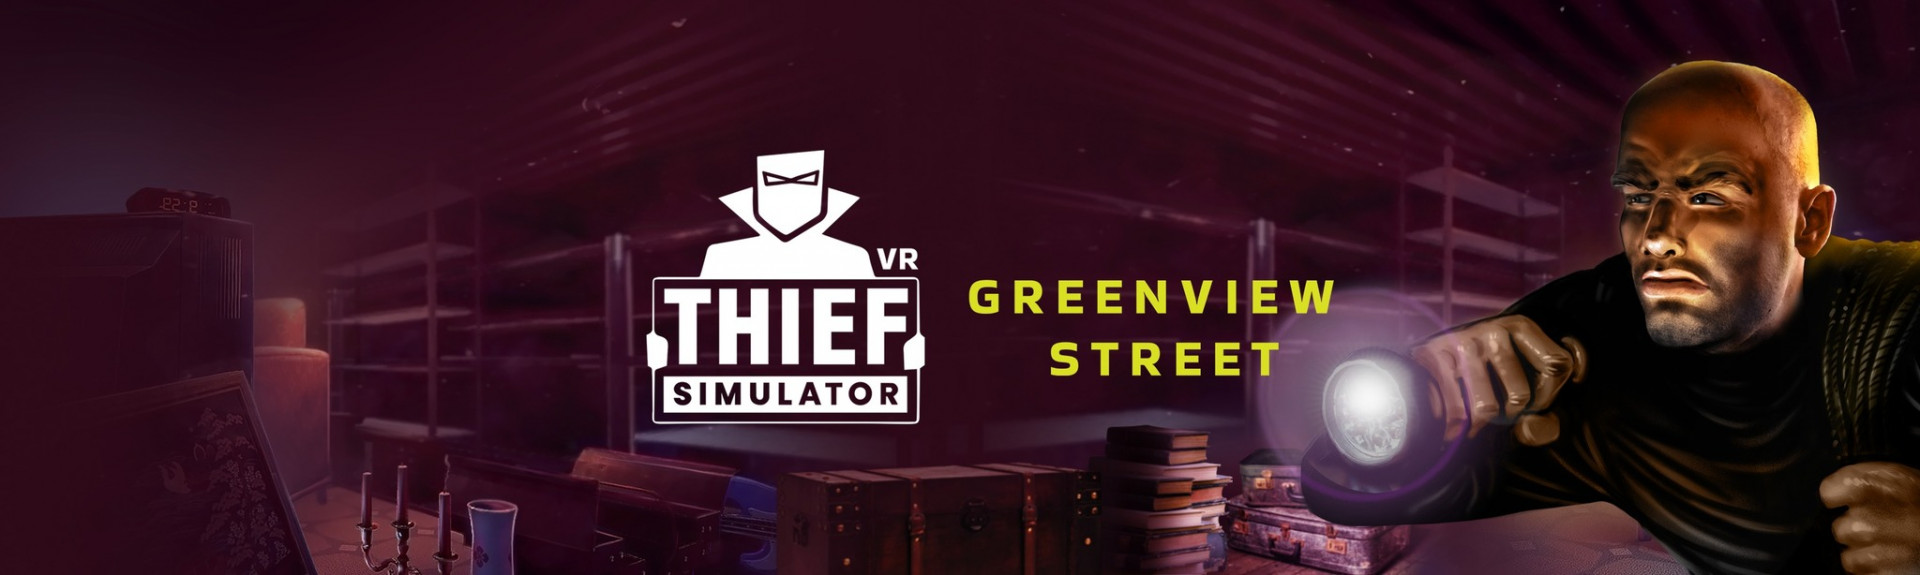 Thief Simulator VR - Greenview Street